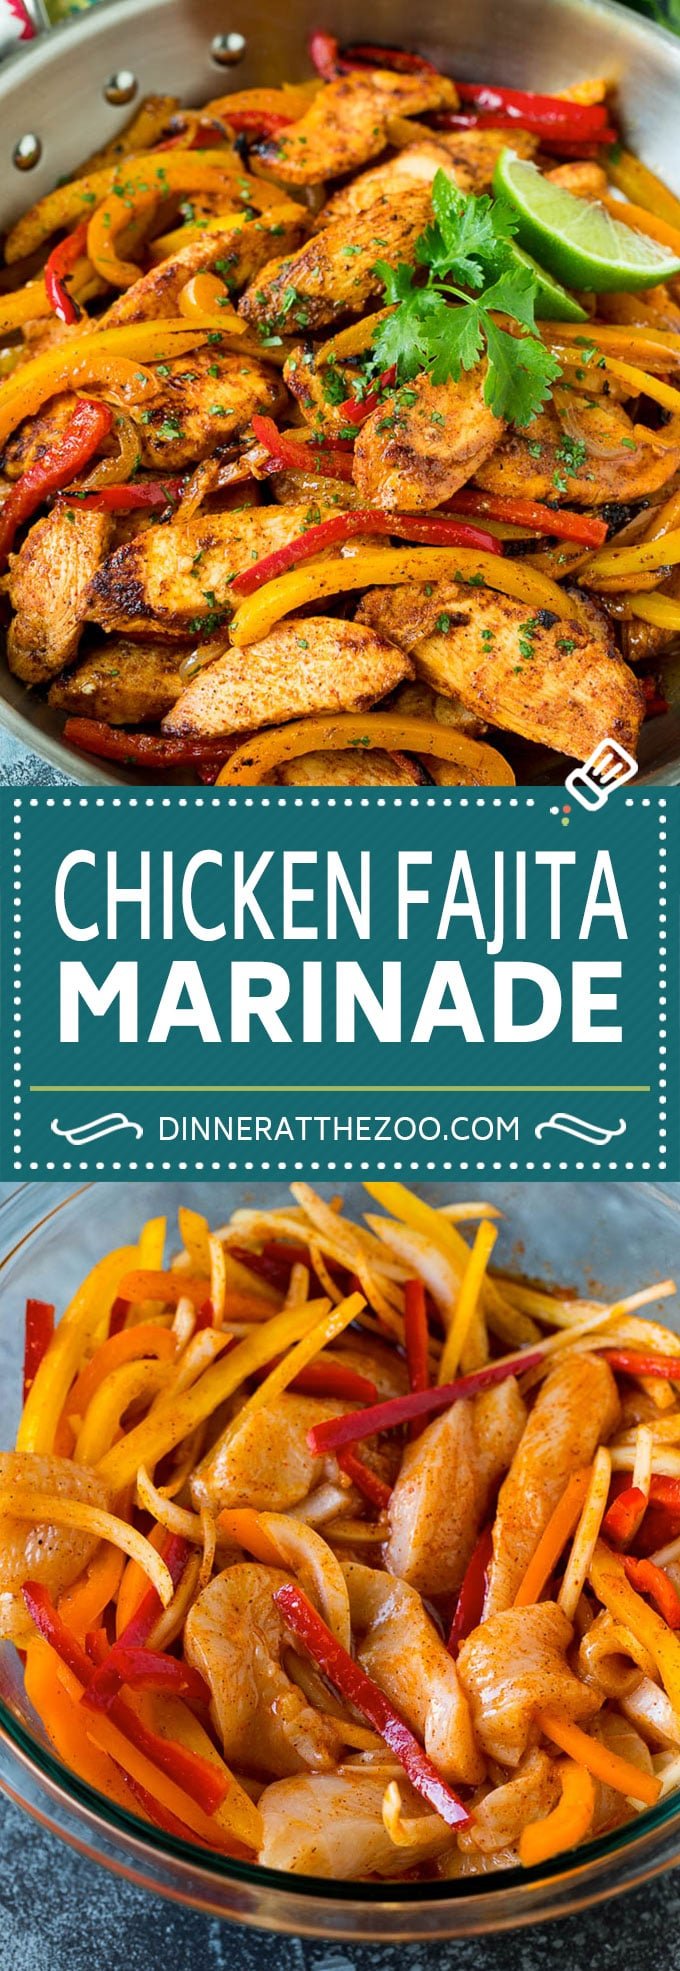 Chicken Fajita Marinade Recipe | Chicken Fajitas #chicken #fajitas #marinade #dinner #dinneratthezoo